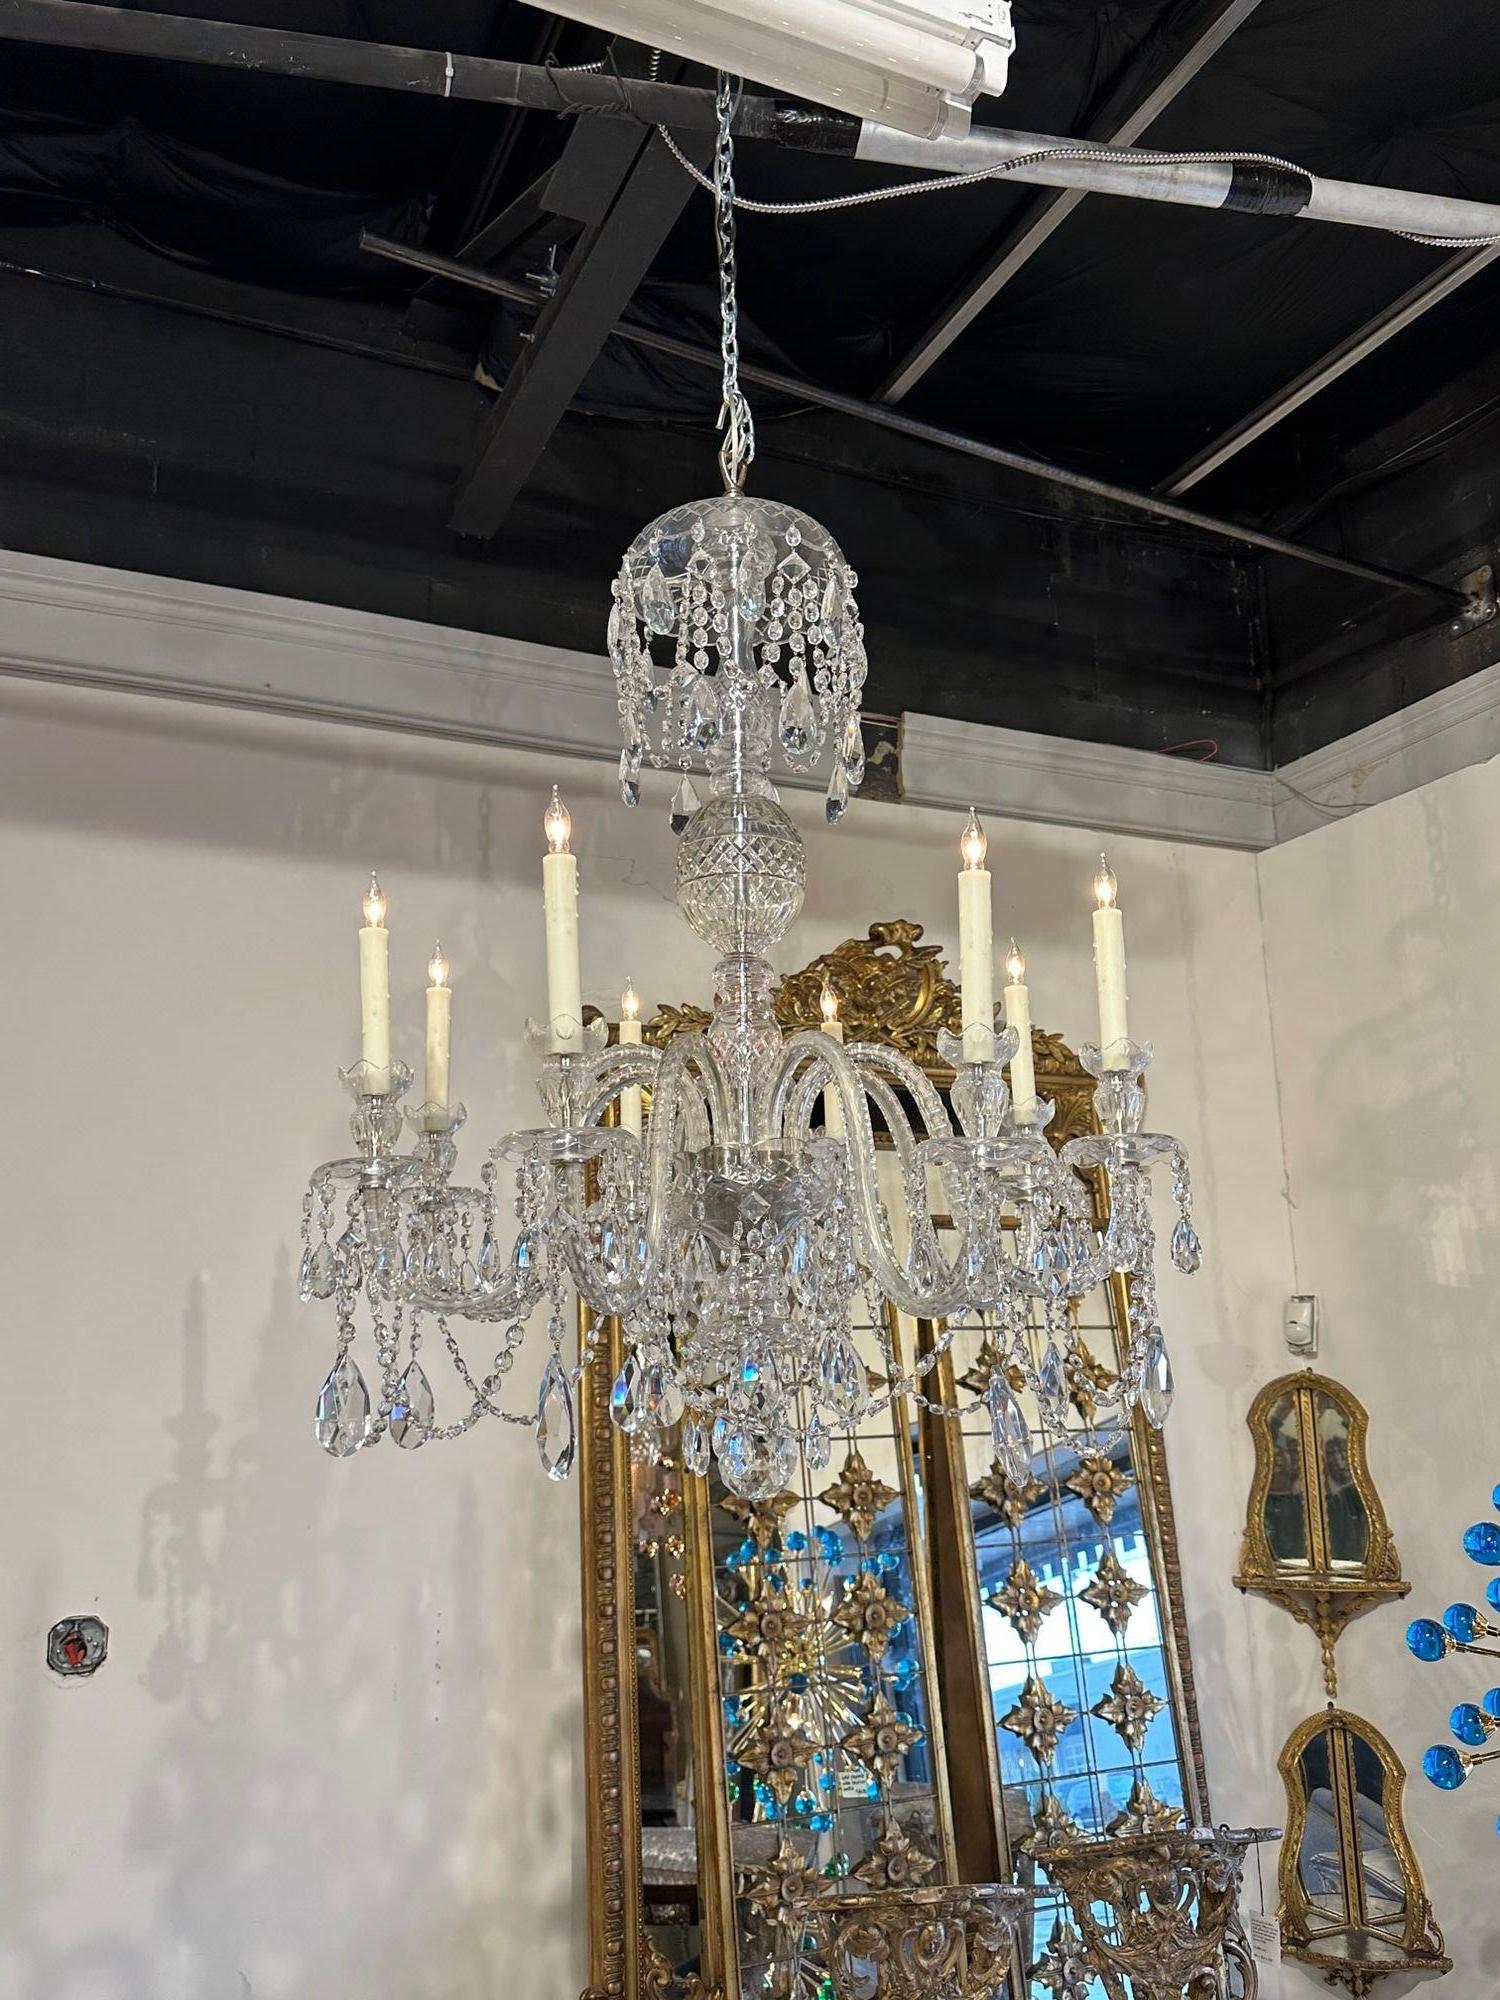 Magnifique lustre à 8 lumières de style Waterford anglais du 19e siècle. Circa 1900. Le lustre a été recâblé par des professionnels et est livré avec une chaîne et un baldaquin assortis. Il est prêt à être suspendu !